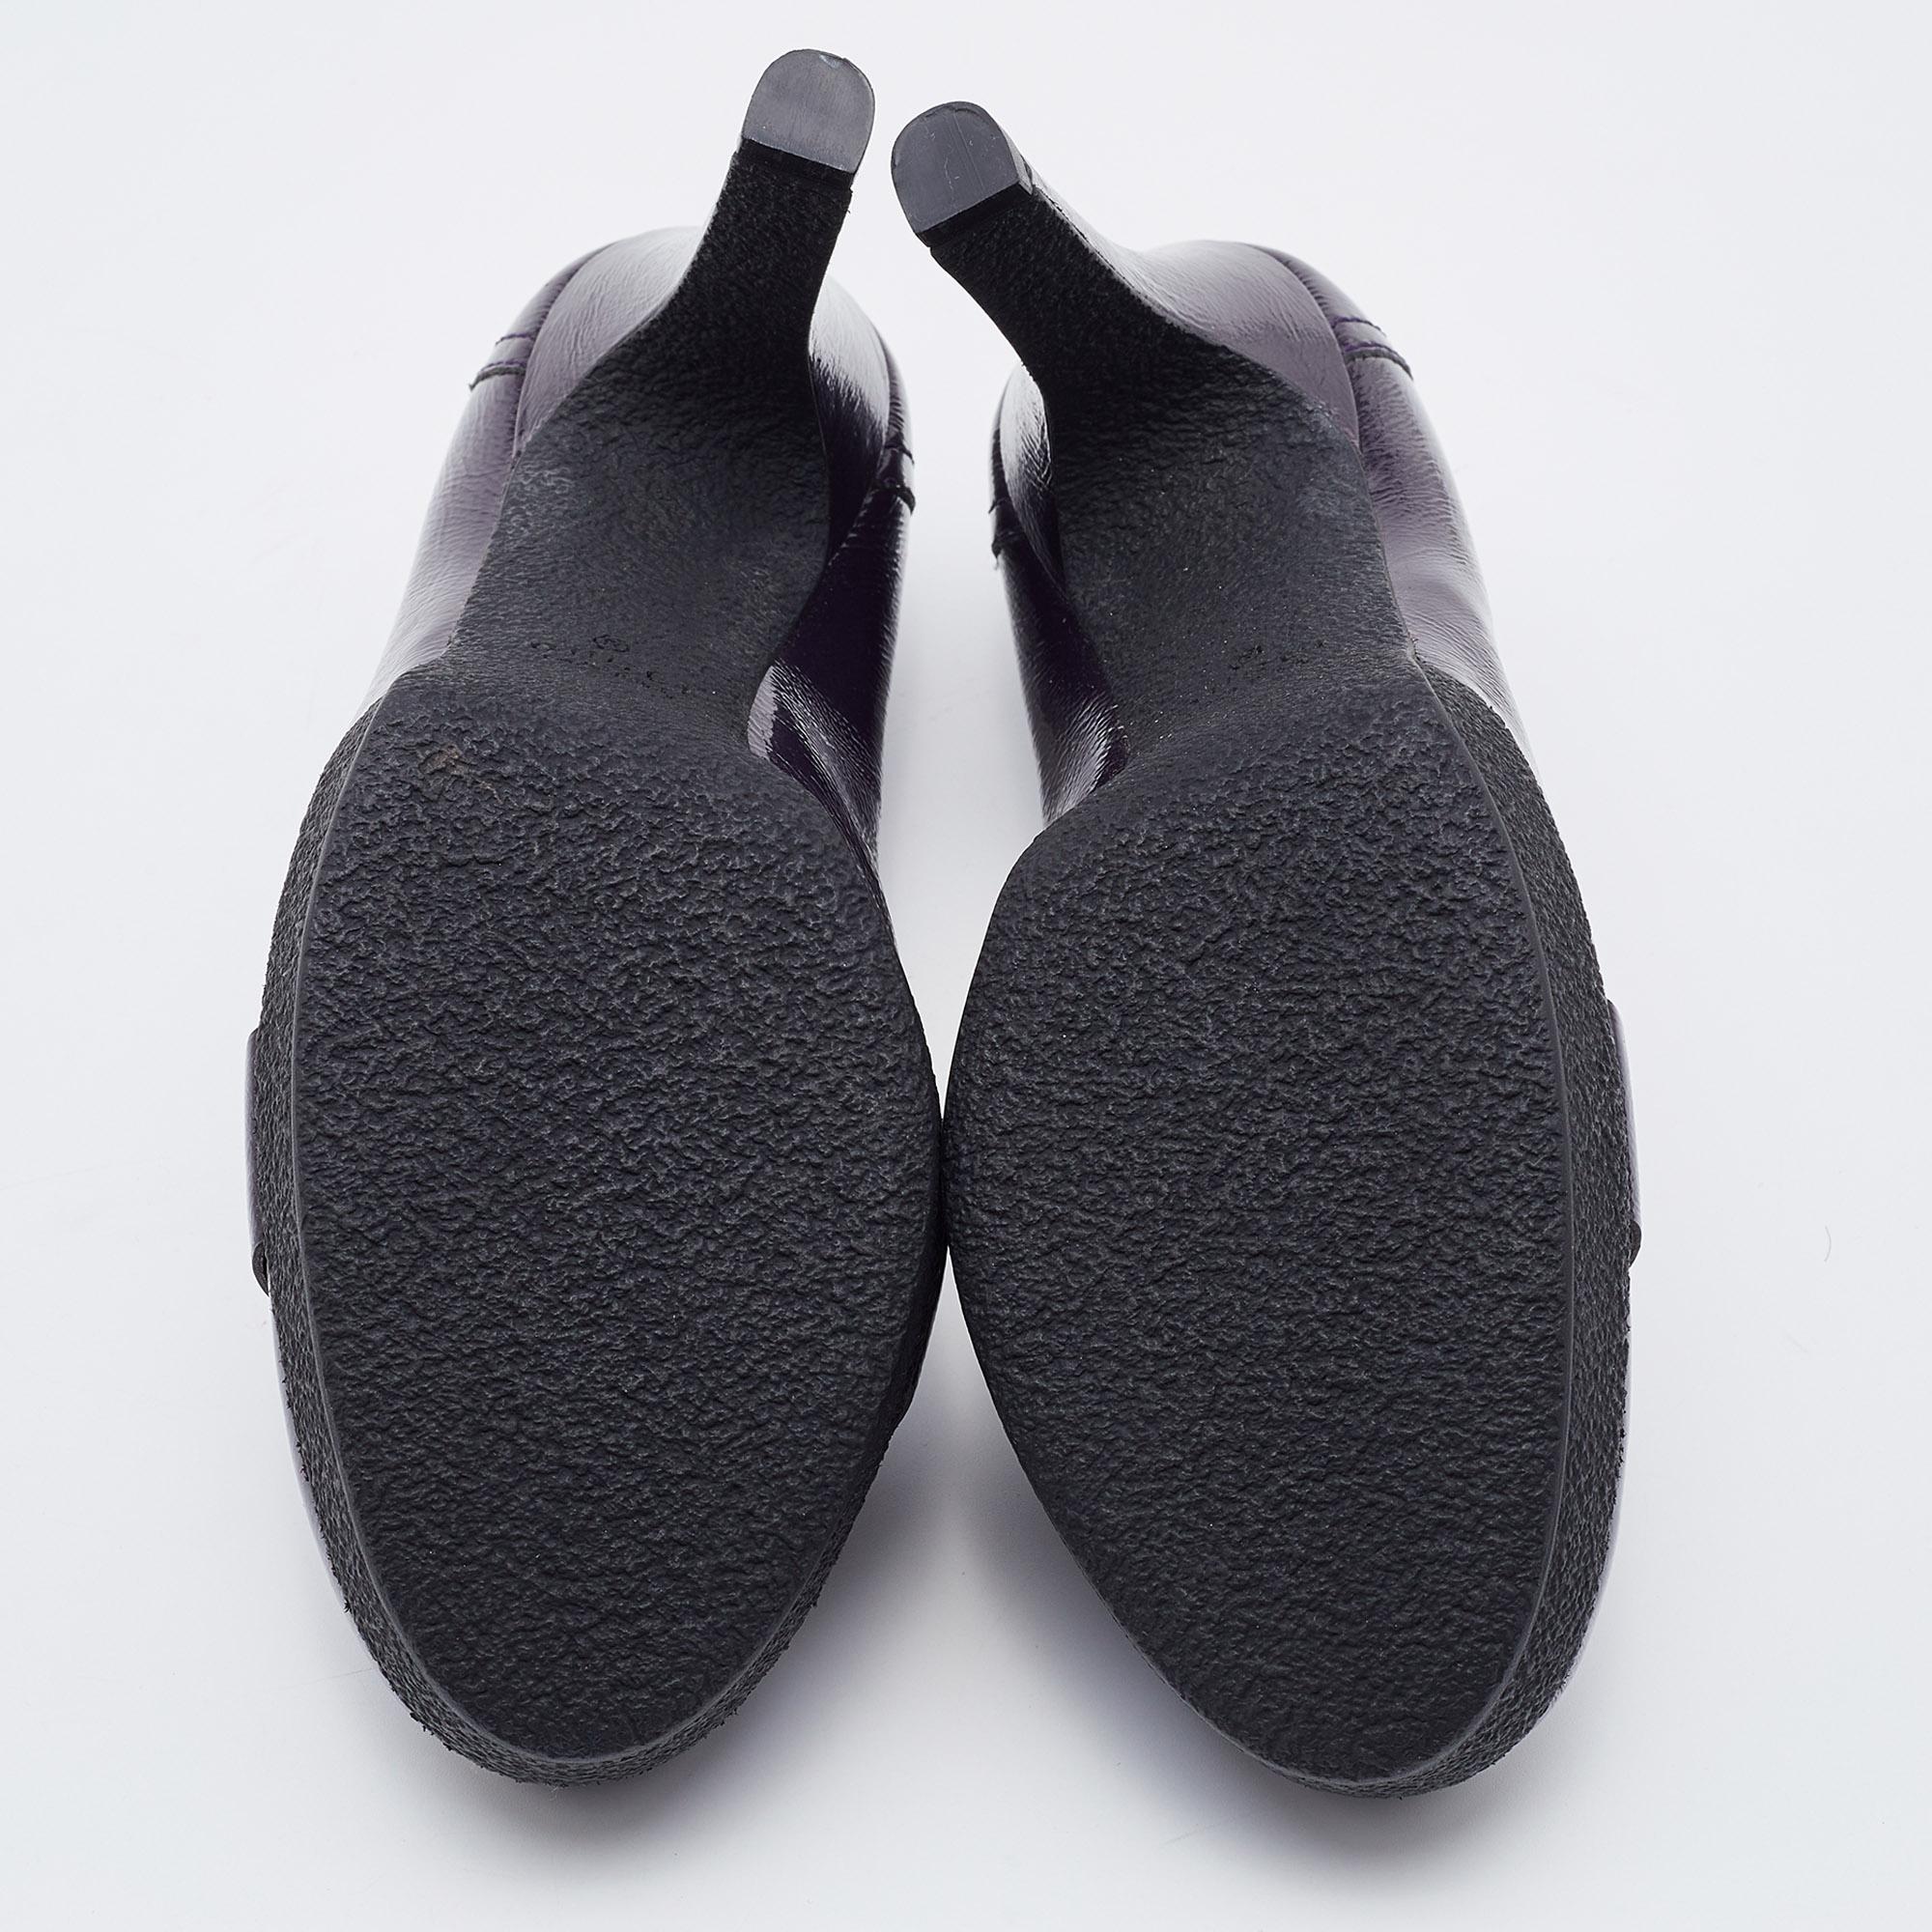 Gucci Purple Patent Leather Horsebit Platform Loafer Pumps Size 37.5 2